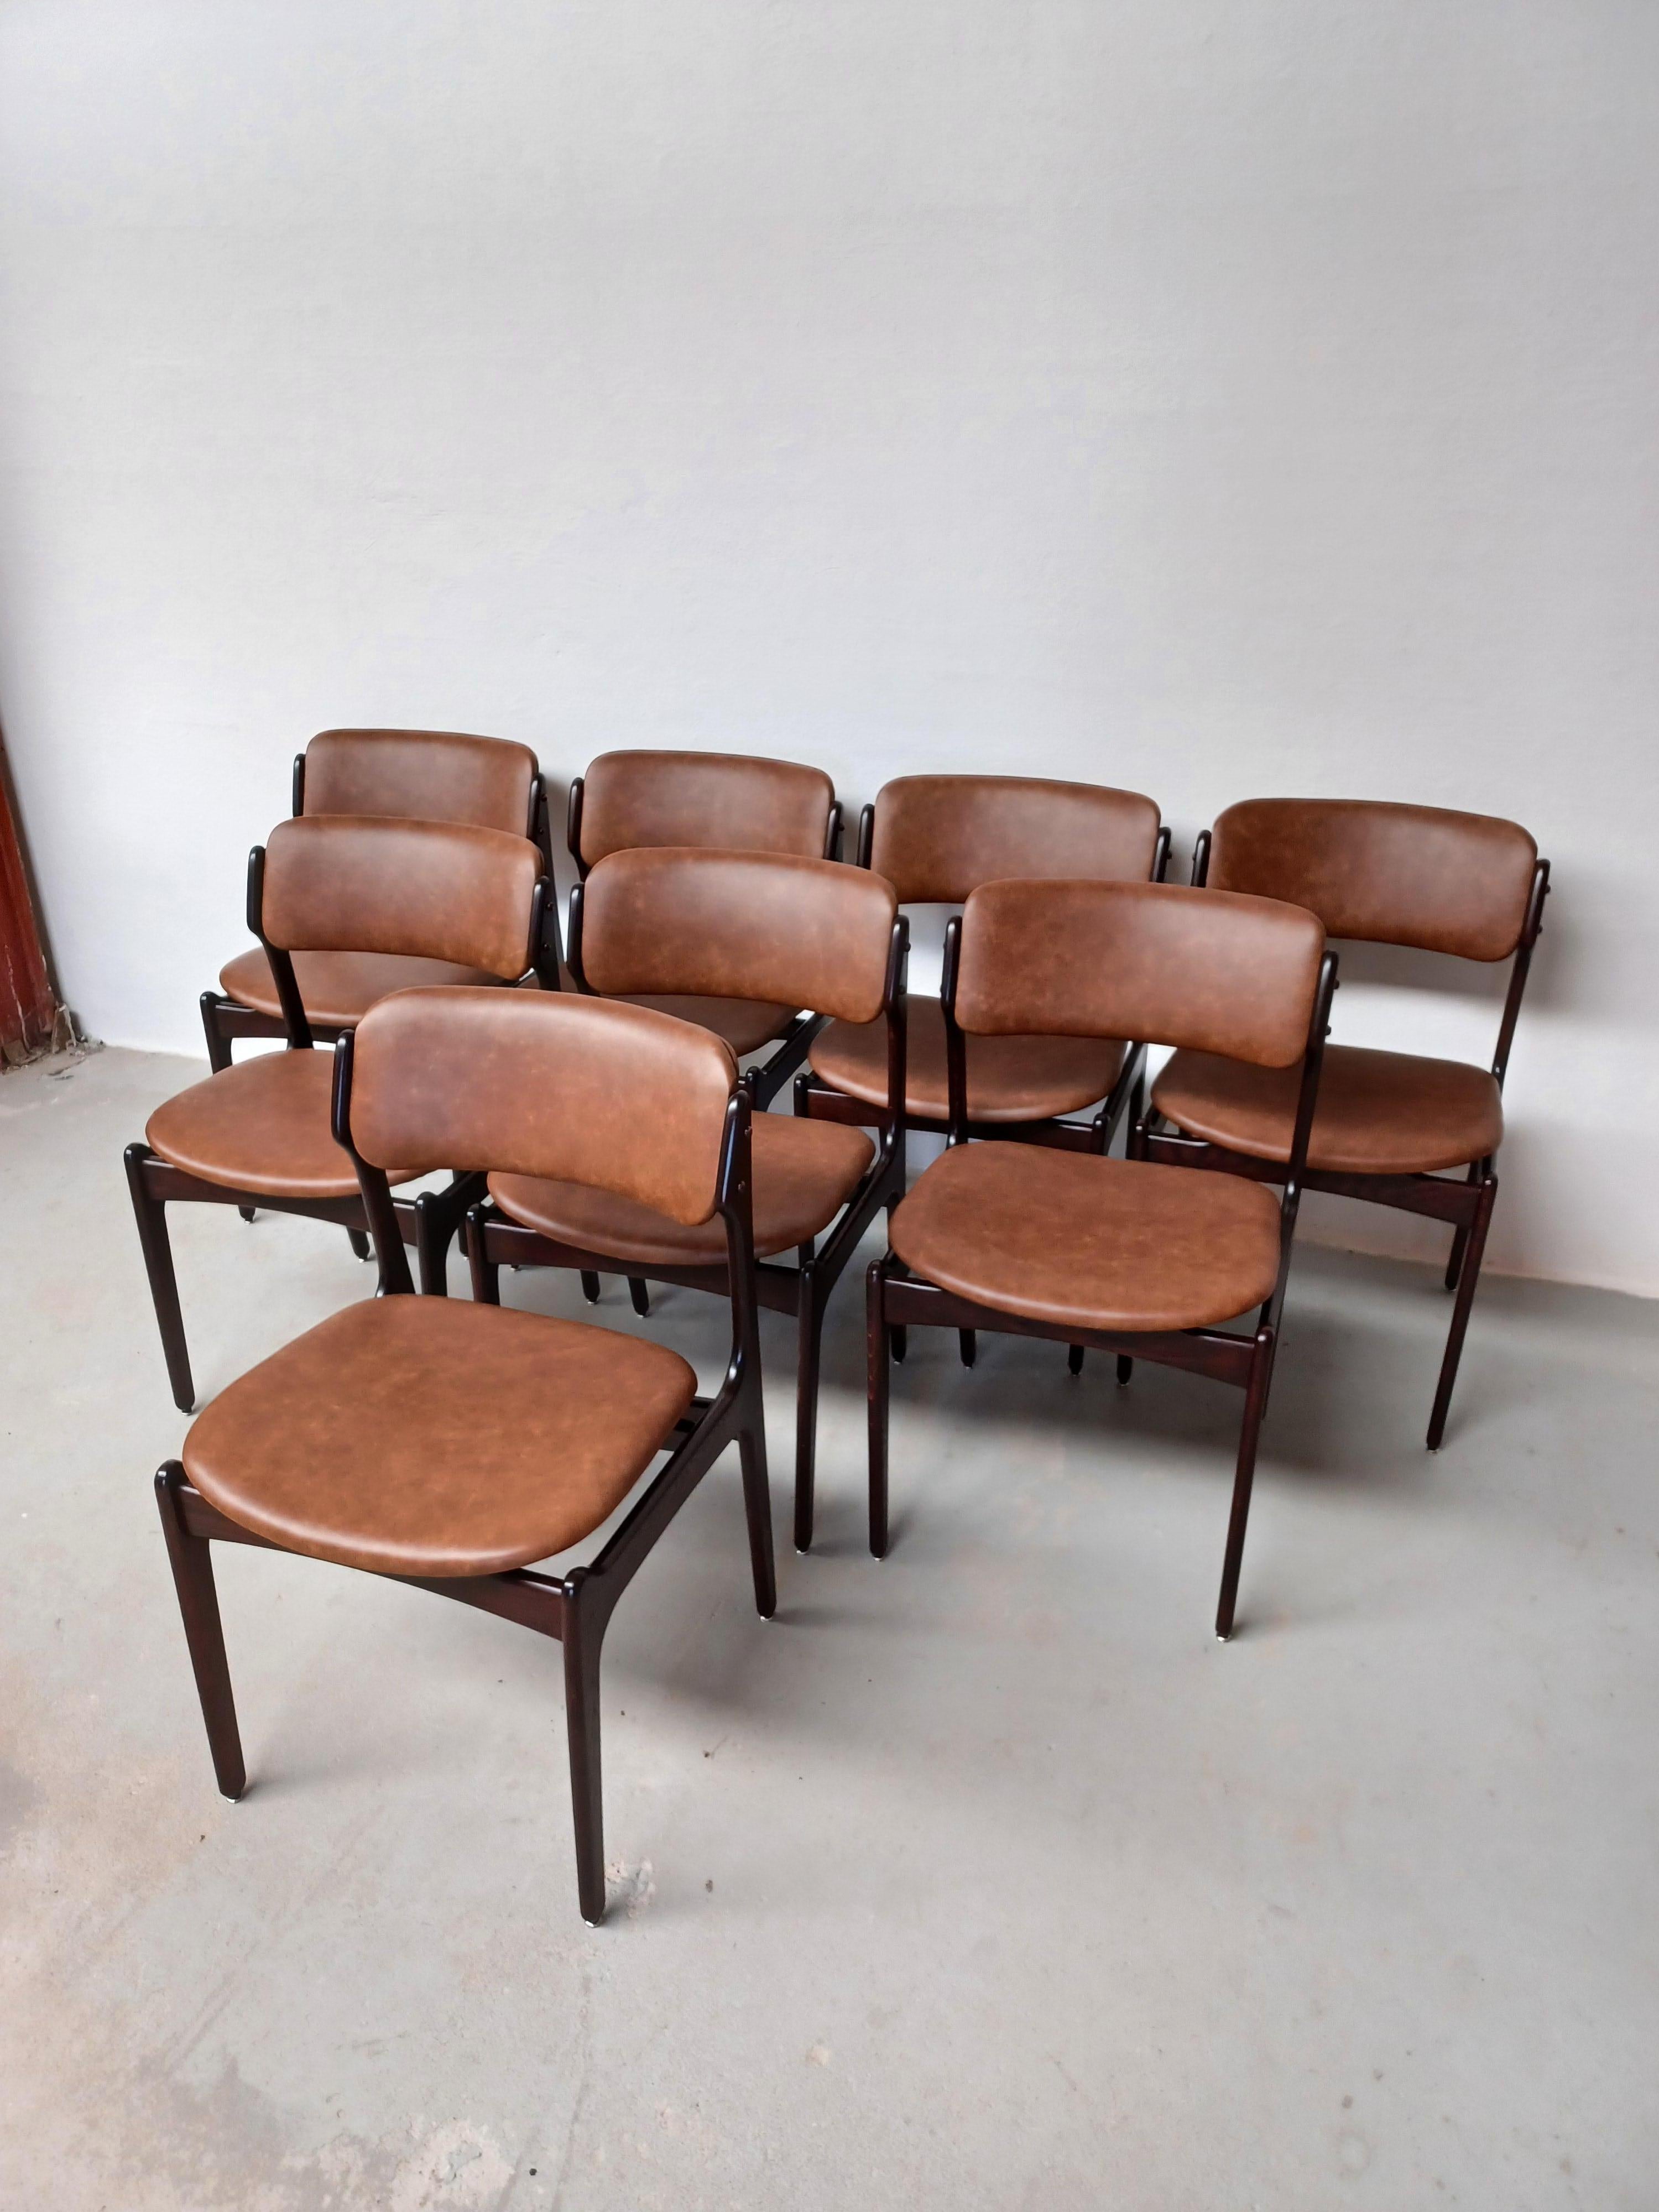 Ensemble de huit chaises de salle à manger en chêne bronzé entièrement restaurées et refinies avec sièges flottants, conçues par Erik Buch pour Oddense Maskinsnedkeri, années 1960

Les chaises ont une construction simple et attrayante qui devient de